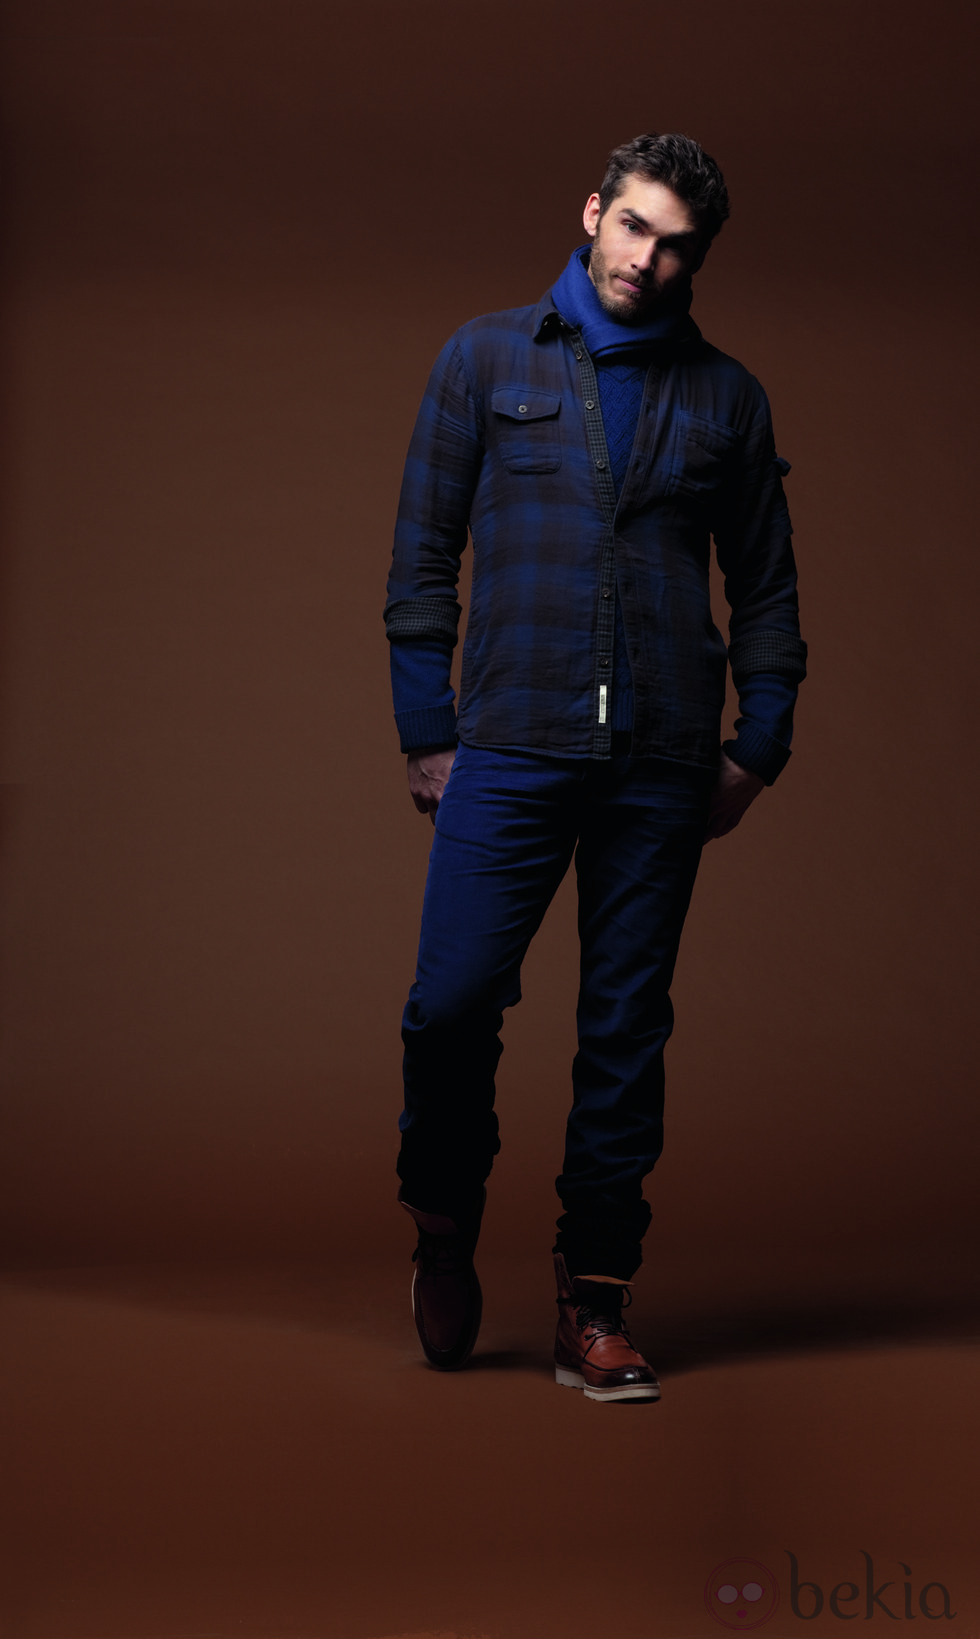 Camisa azul y gris con pantalones azules de la colección otoño/invierno 2012/2013 de Chevignon